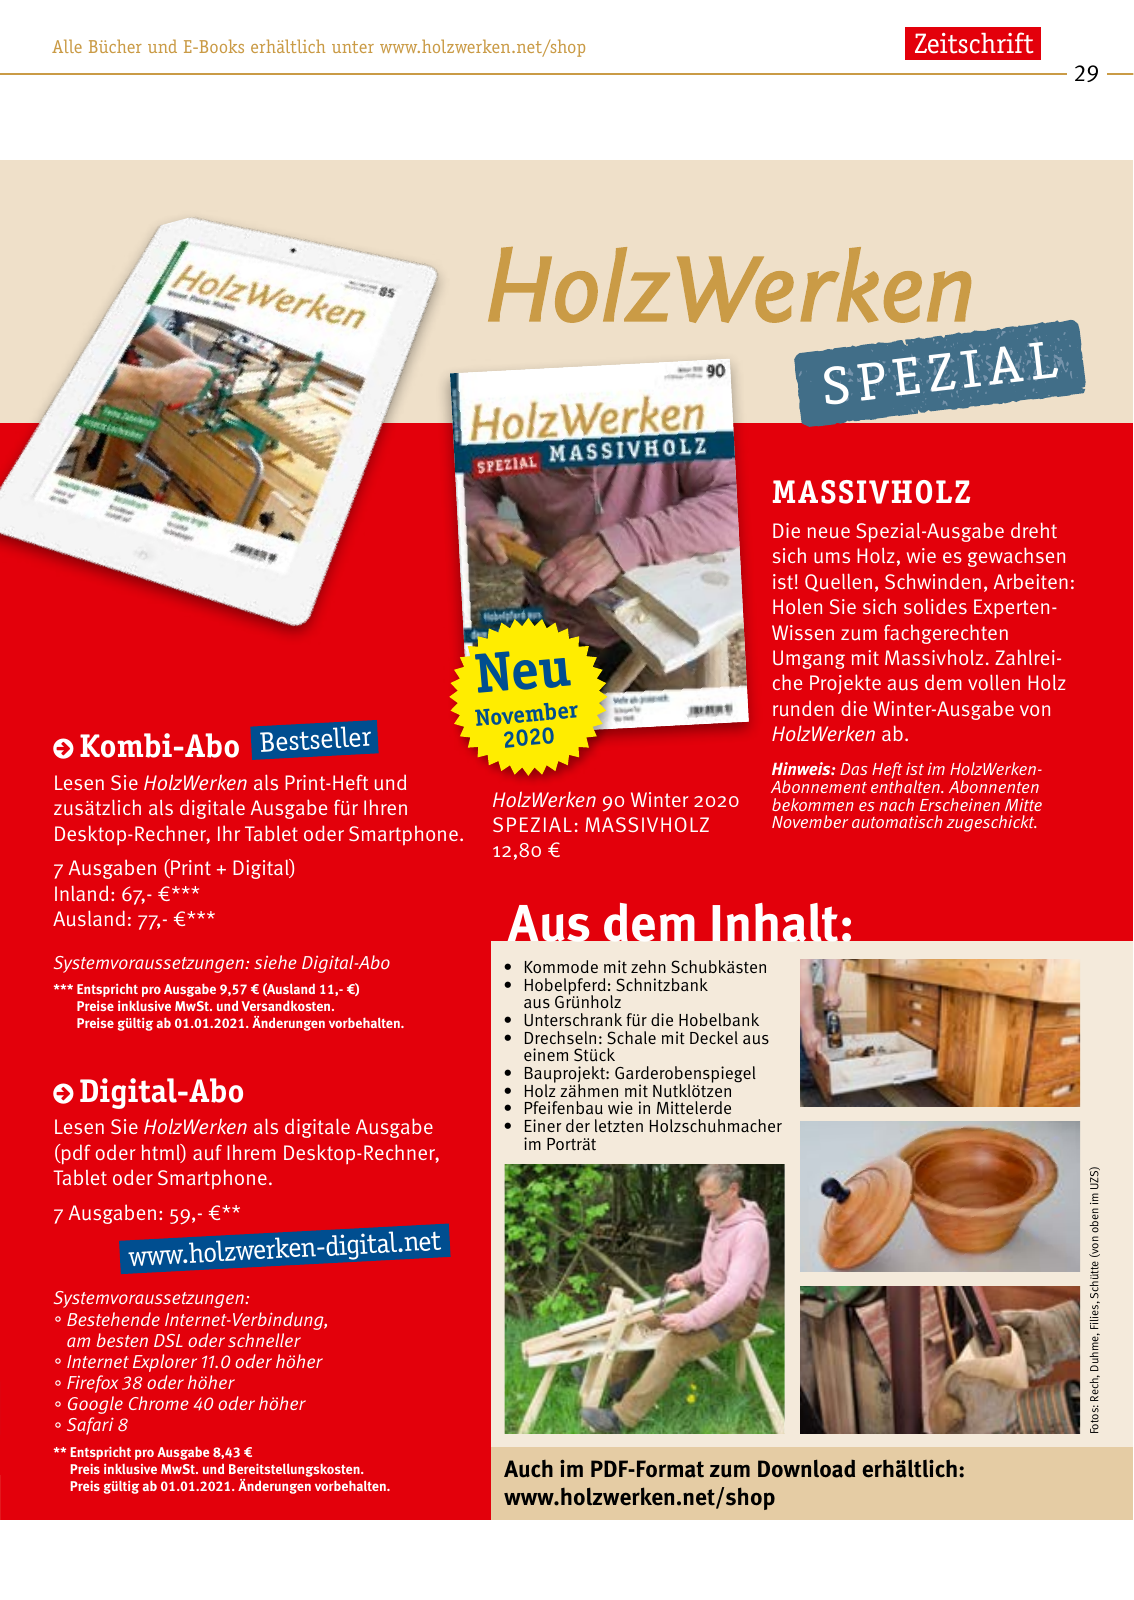 Vorschau HolzWerken Katalog 2021 Seite 29